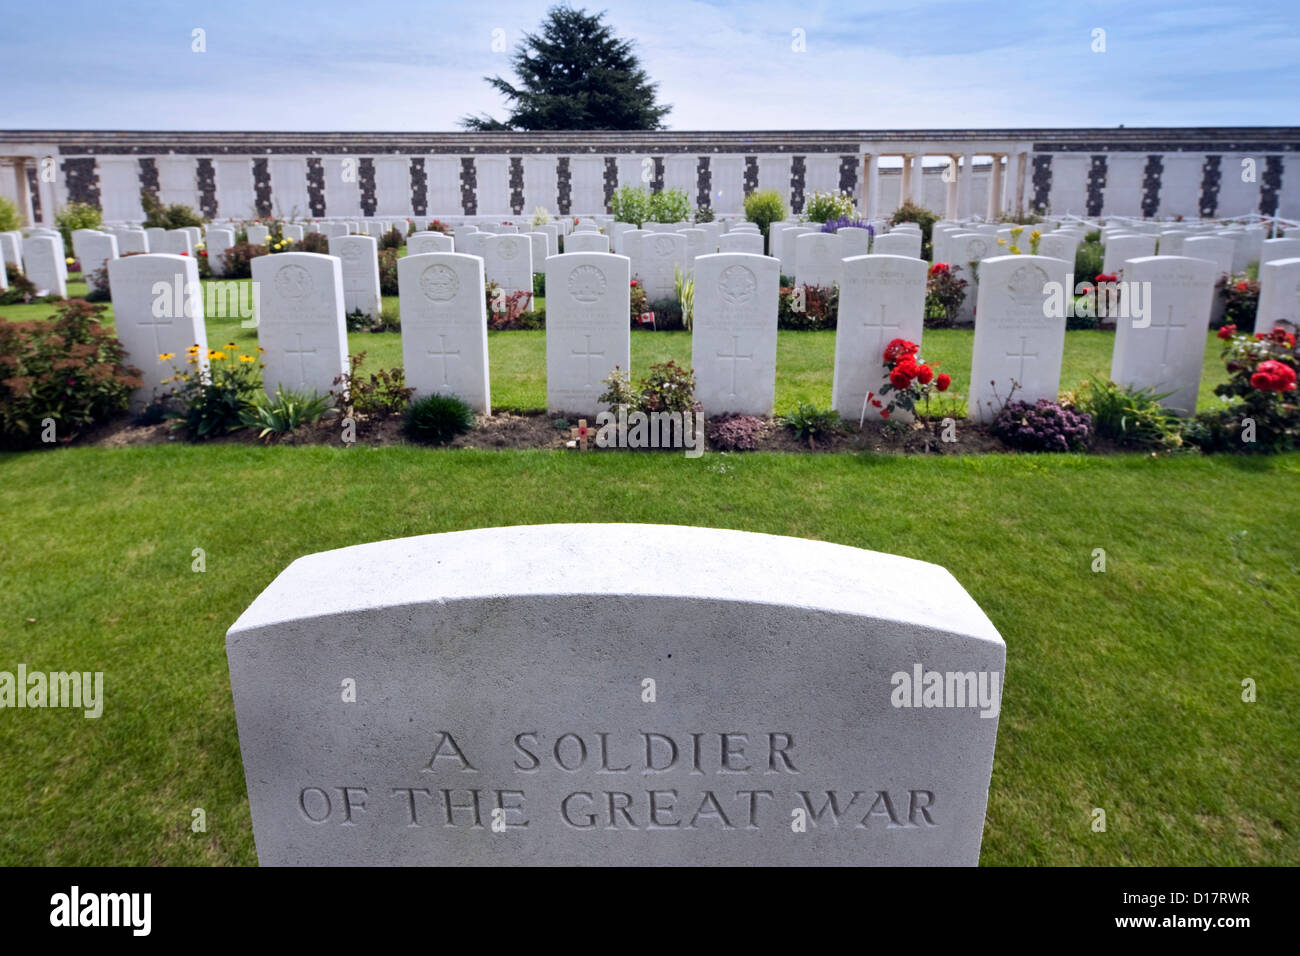 Commission des sépultures de guerre du Commonwealth cimetière de Tyne Cot pour la première guerre mondiale, l'un des soldats britanniques à Passendale, Flandre orientale, Belgique Banque D'Images